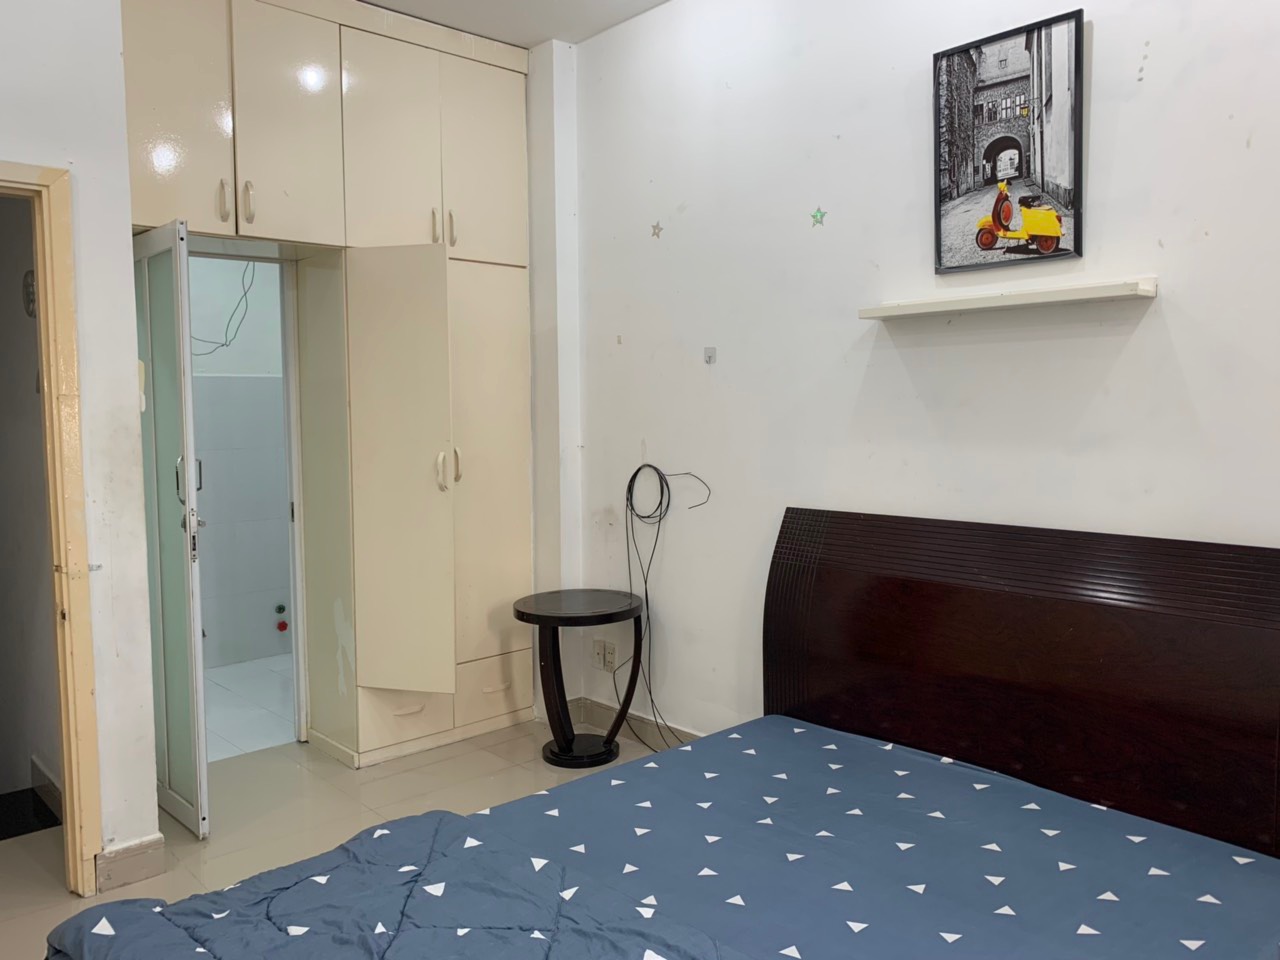 Gia đình cần cho thuê nhà nguyên căn 3 phòng ngủ, full nội thất cơ bản tại đường 31, phường 5, quận 8, thành phố Hồ Chí Minh.